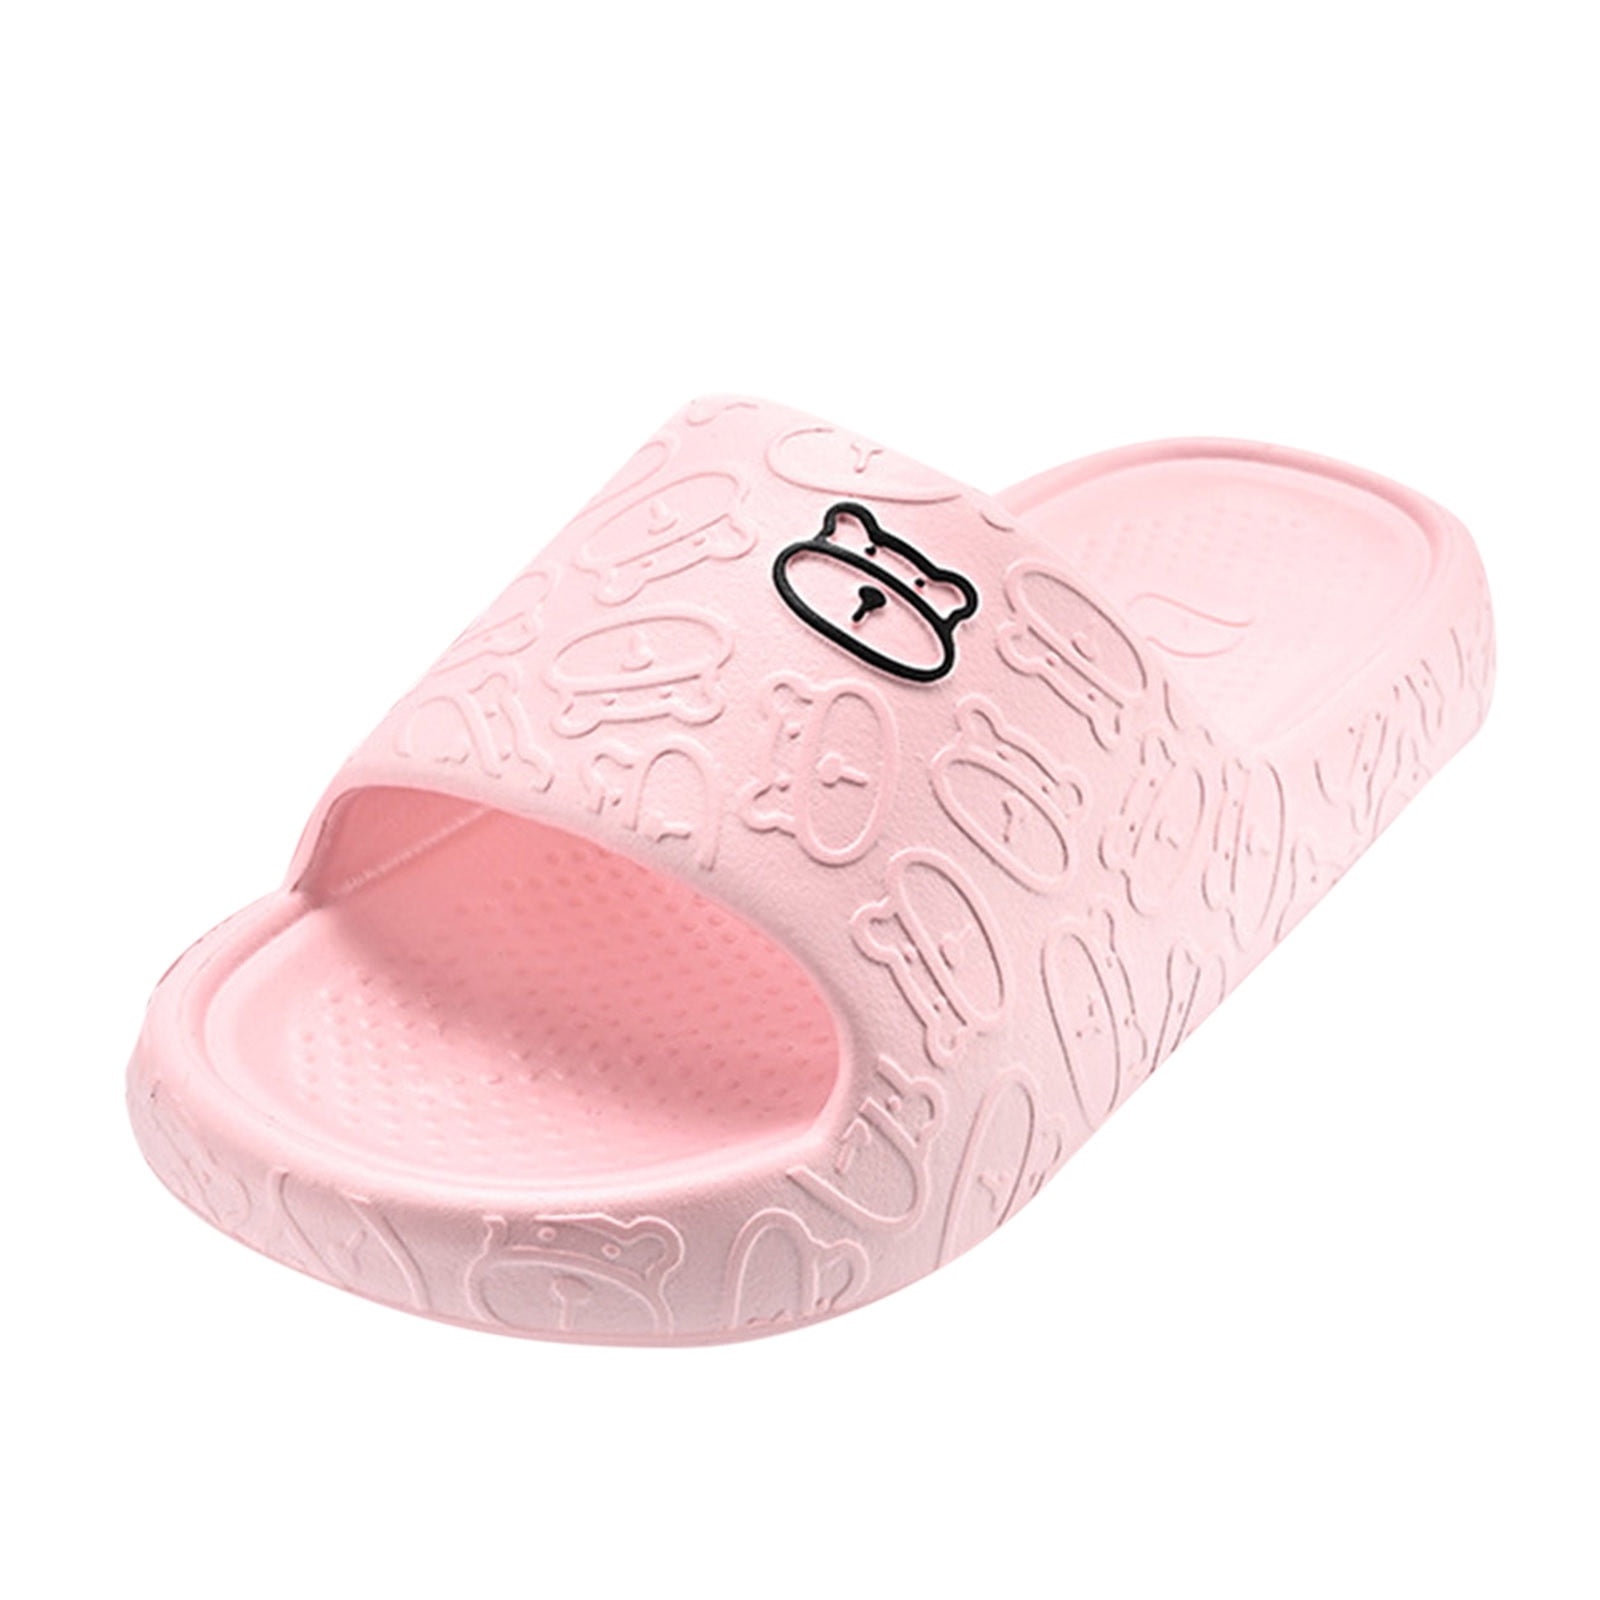 Pimfylm Cat Slippers Women's Memory Foam Open Toe Slide Slippers with ...